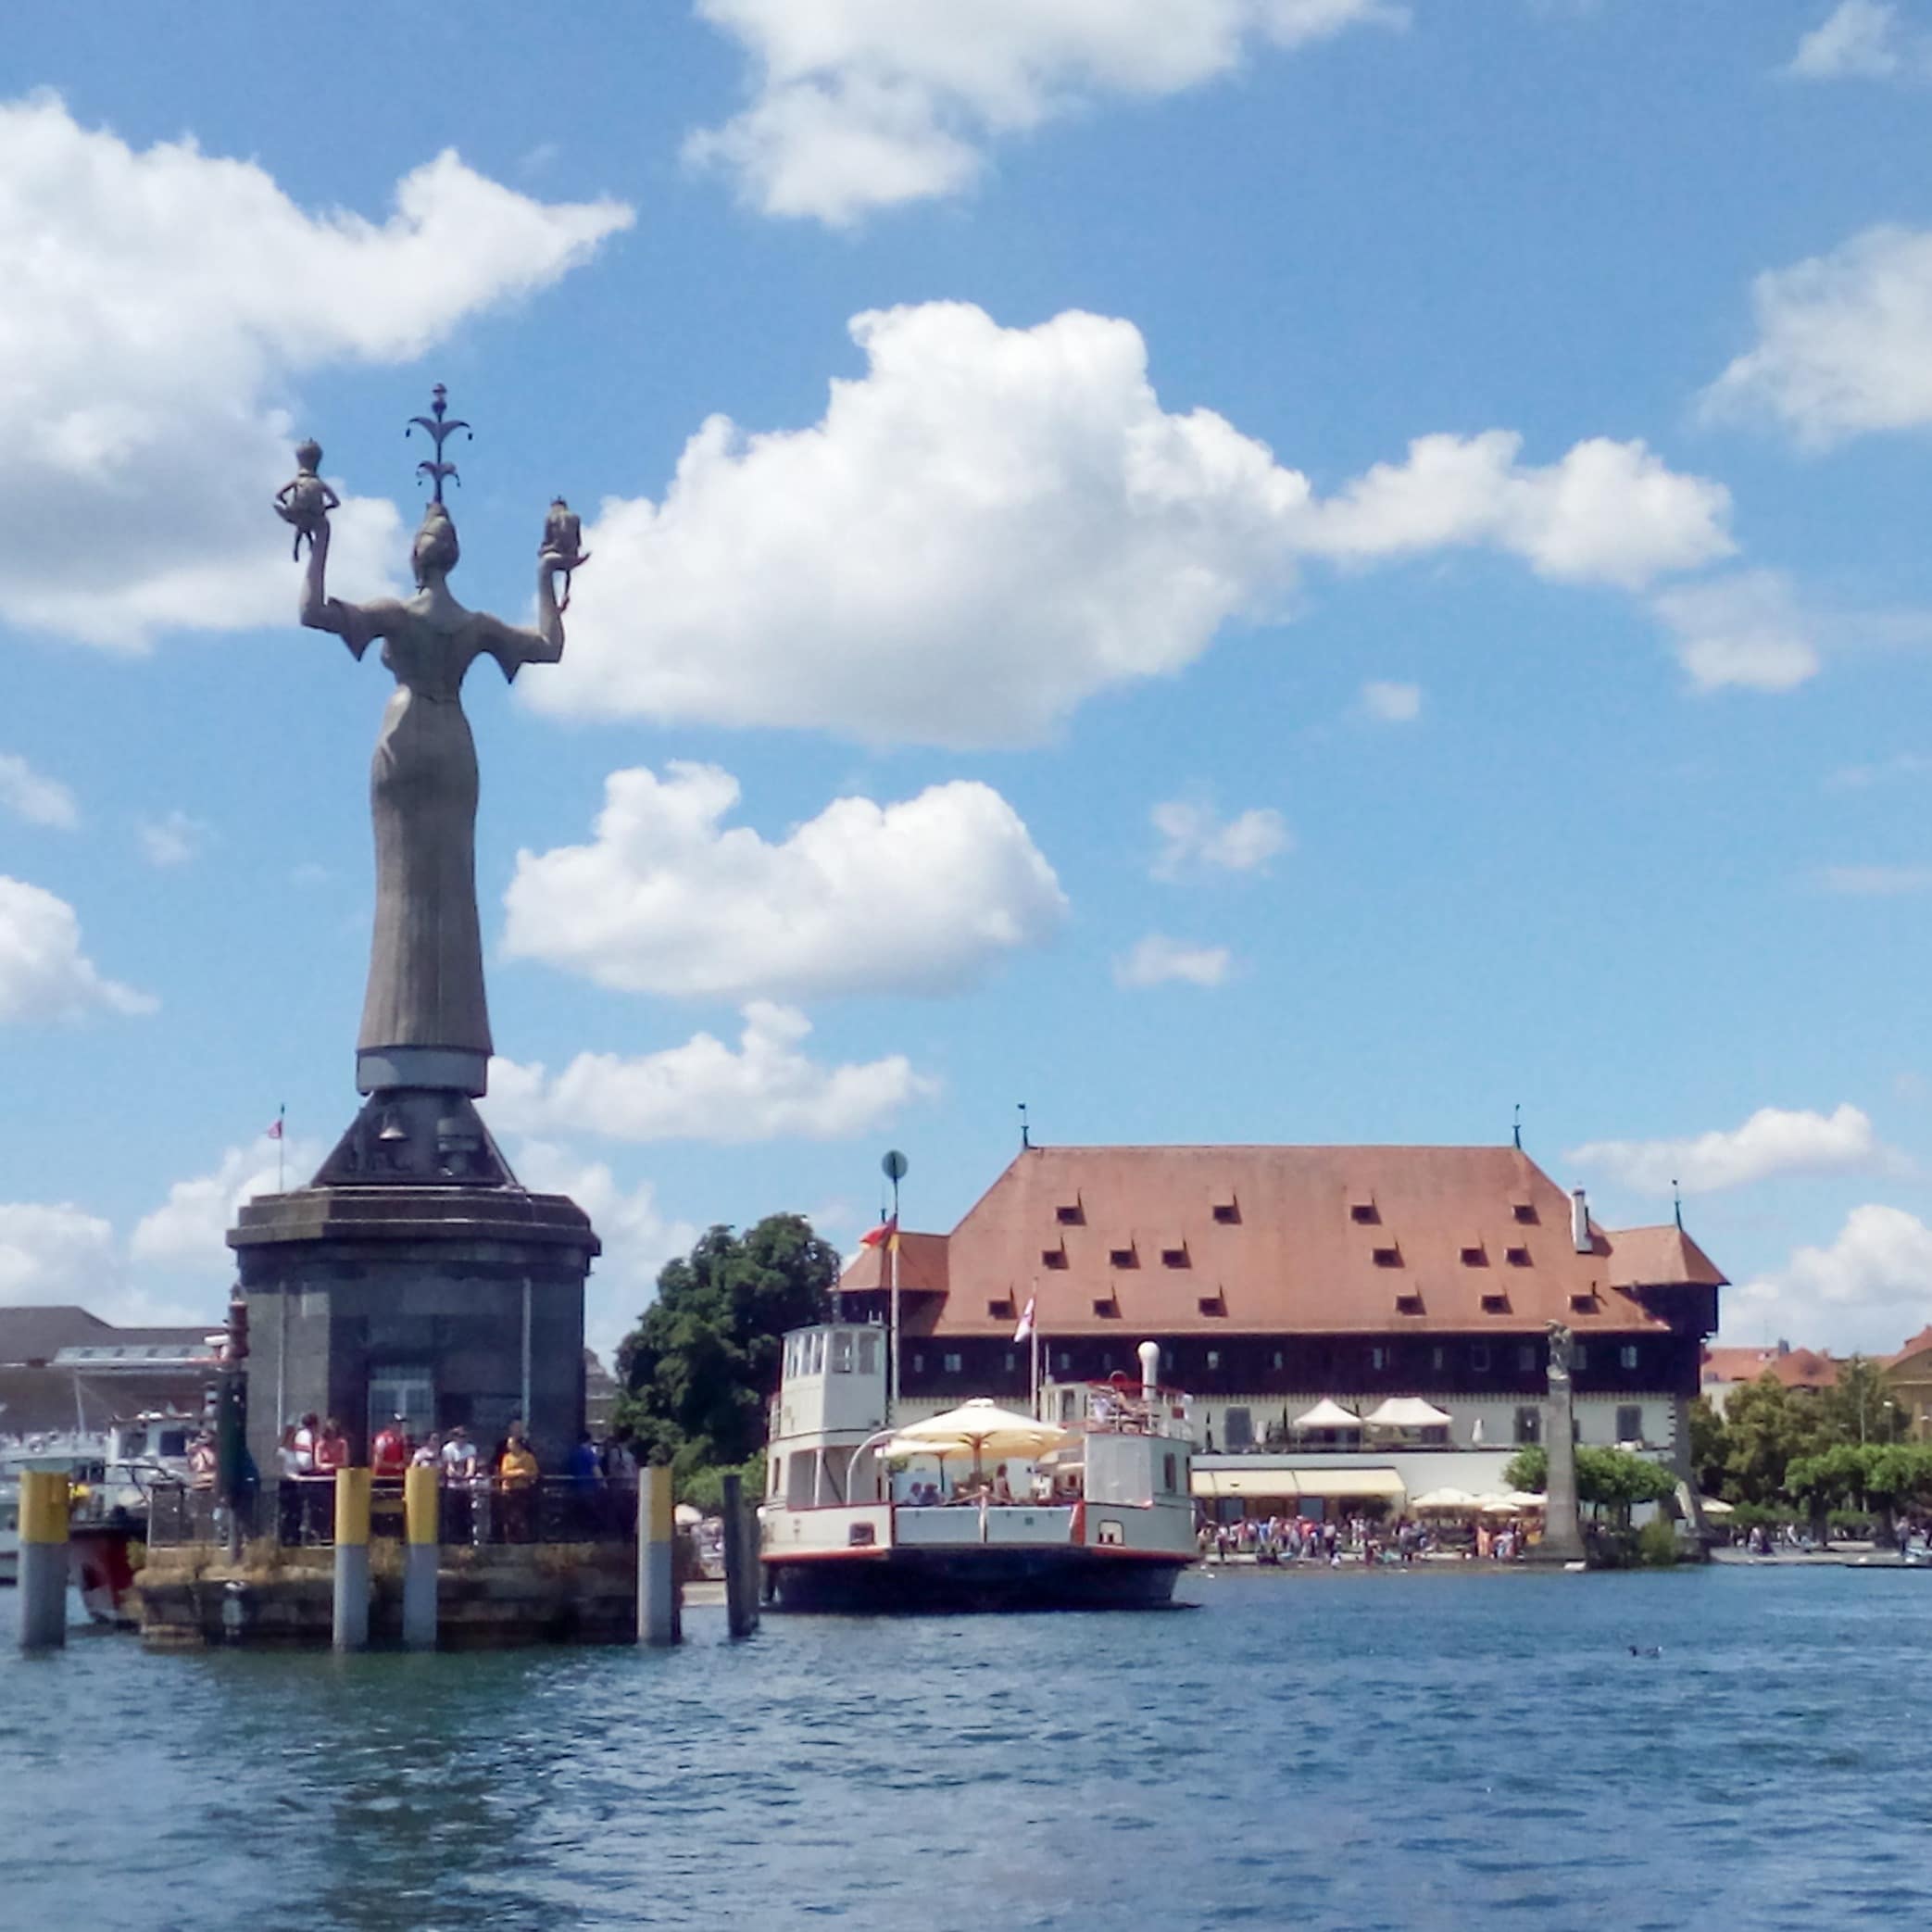 Blick über das Wasser auf die Hafeneinfahrt von Konstanz mit Blick auf die Imperia.